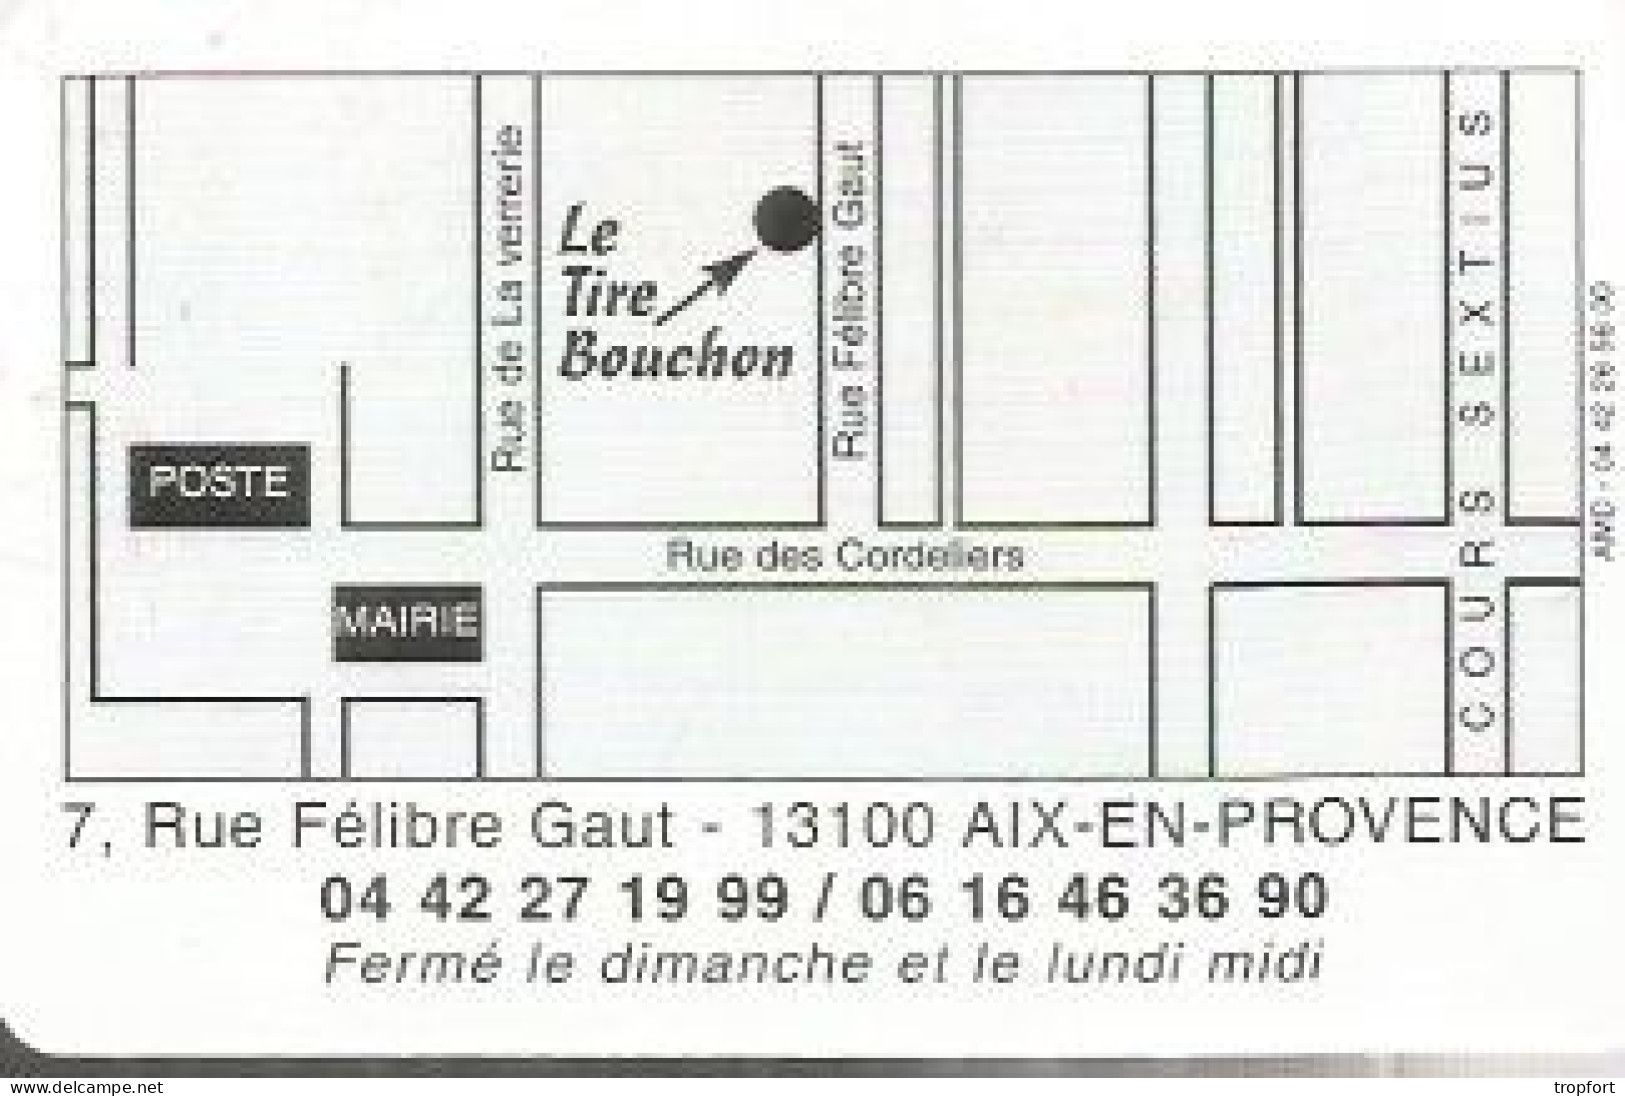 Carte De Visite Restaurant Le Tire Bouchon  13 AIX EN PROVENCE  TIRE BOUCHON - Visiting Cards